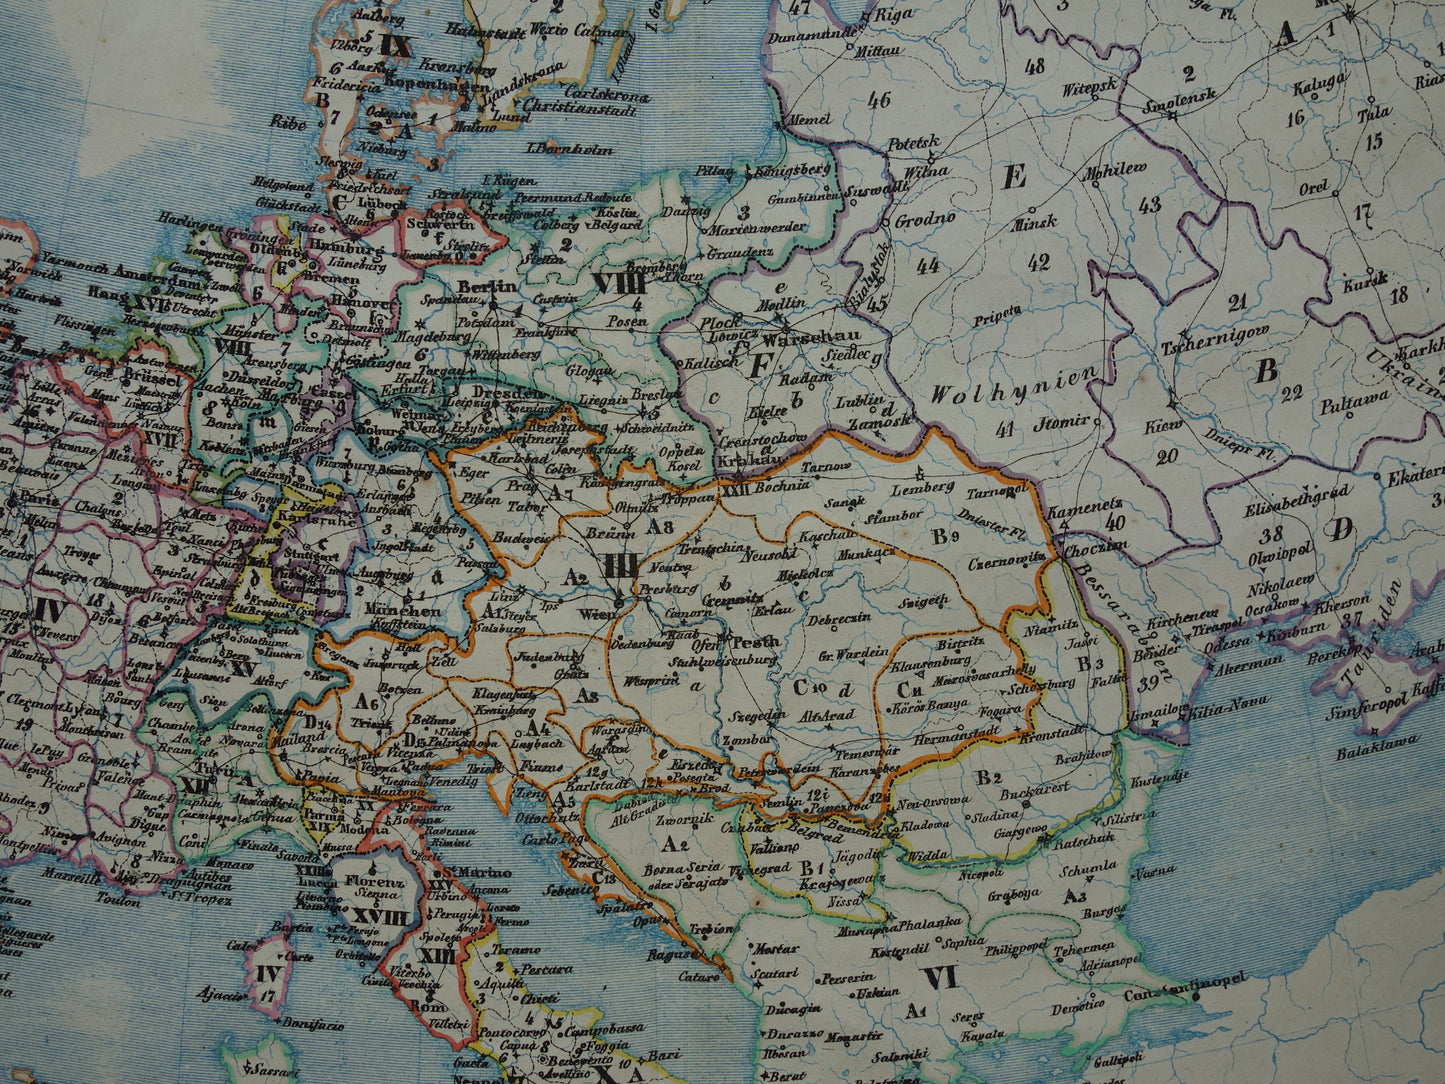 EUROPA grote oude militaire en politieke kaart van Europa uit 1840 originele antieke landkaart Europees continent vintage print